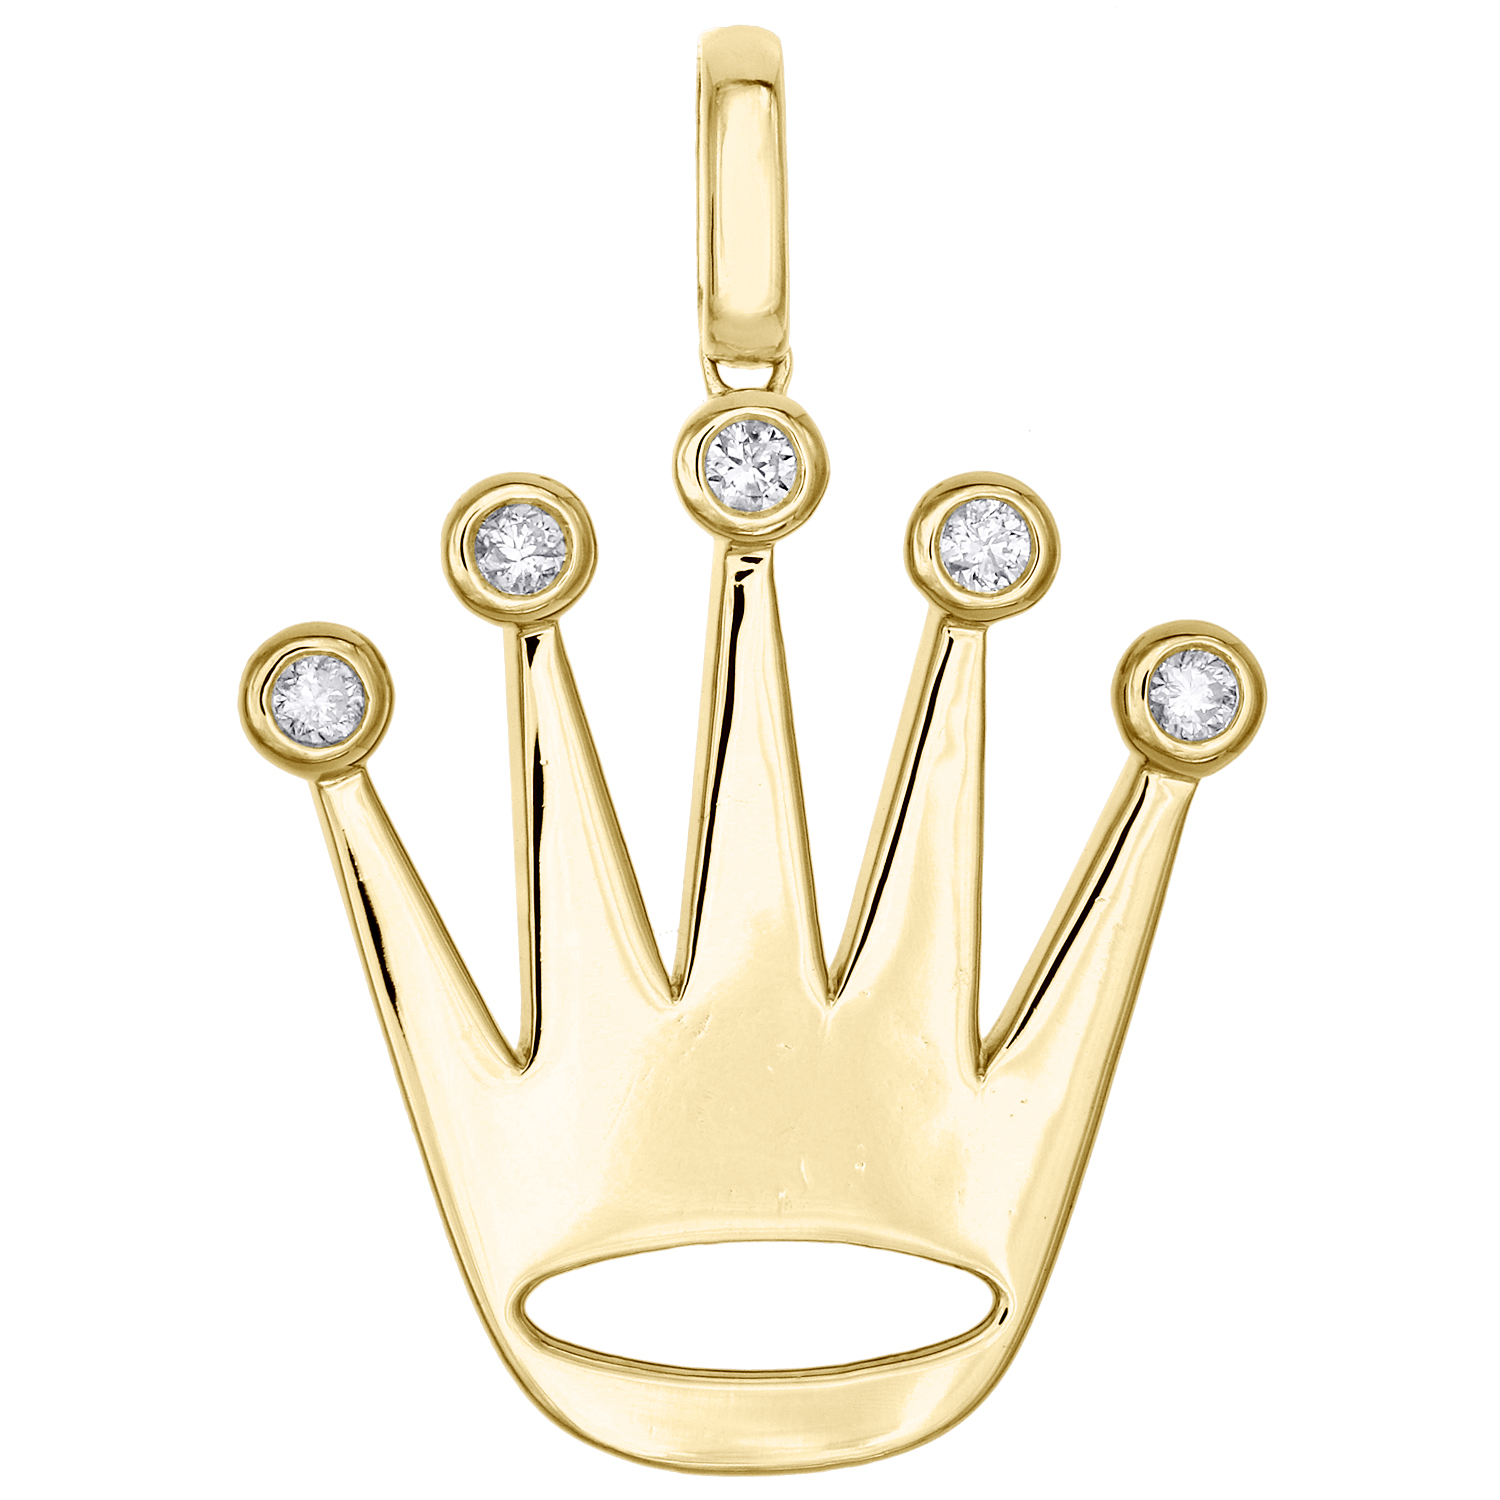 rolex crown pendant necklace